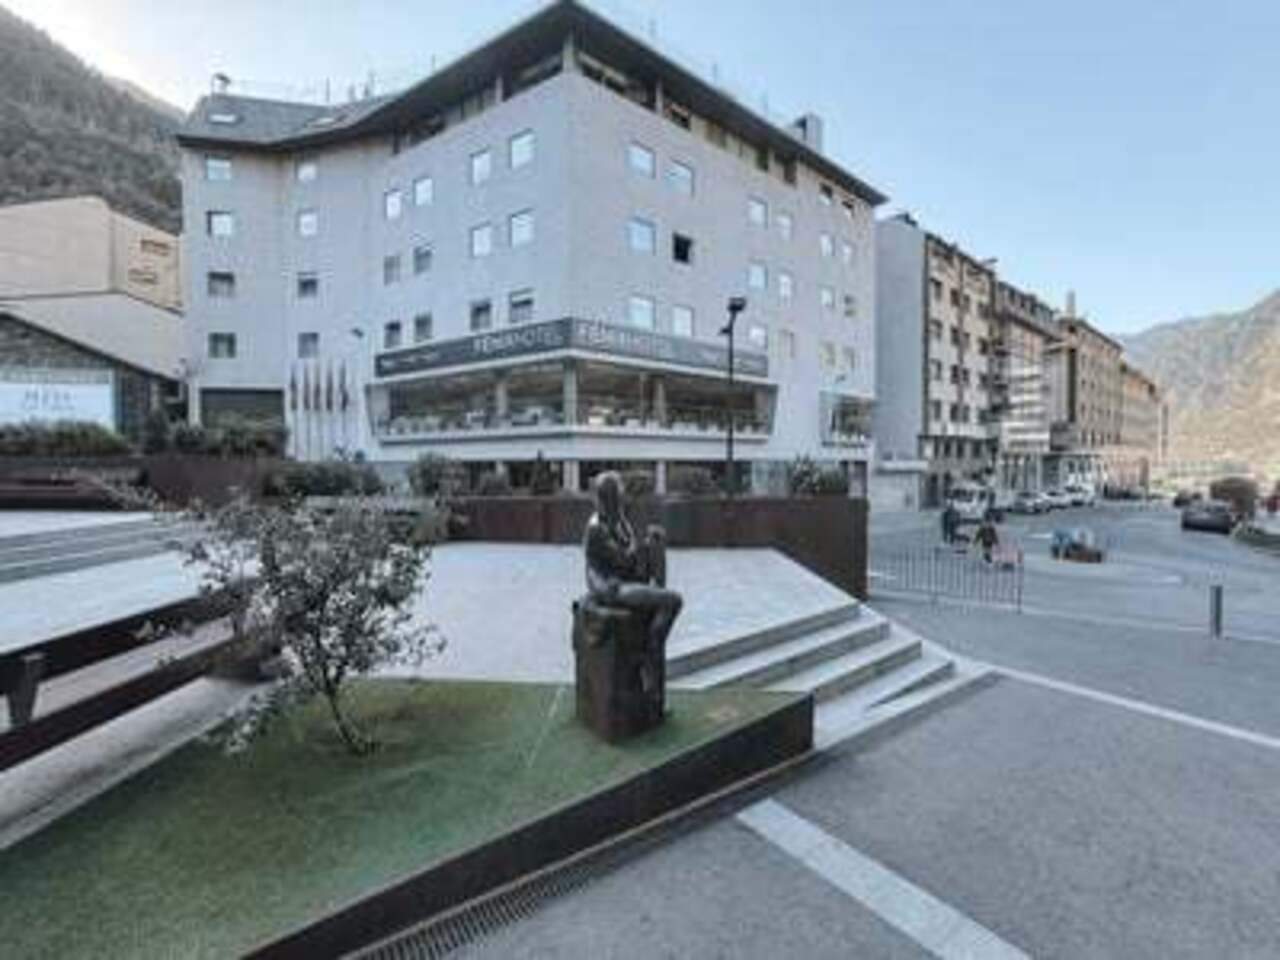 El hotel Fénix Andorra, que será sometido a una reforma dentro del grupo Hesperia.